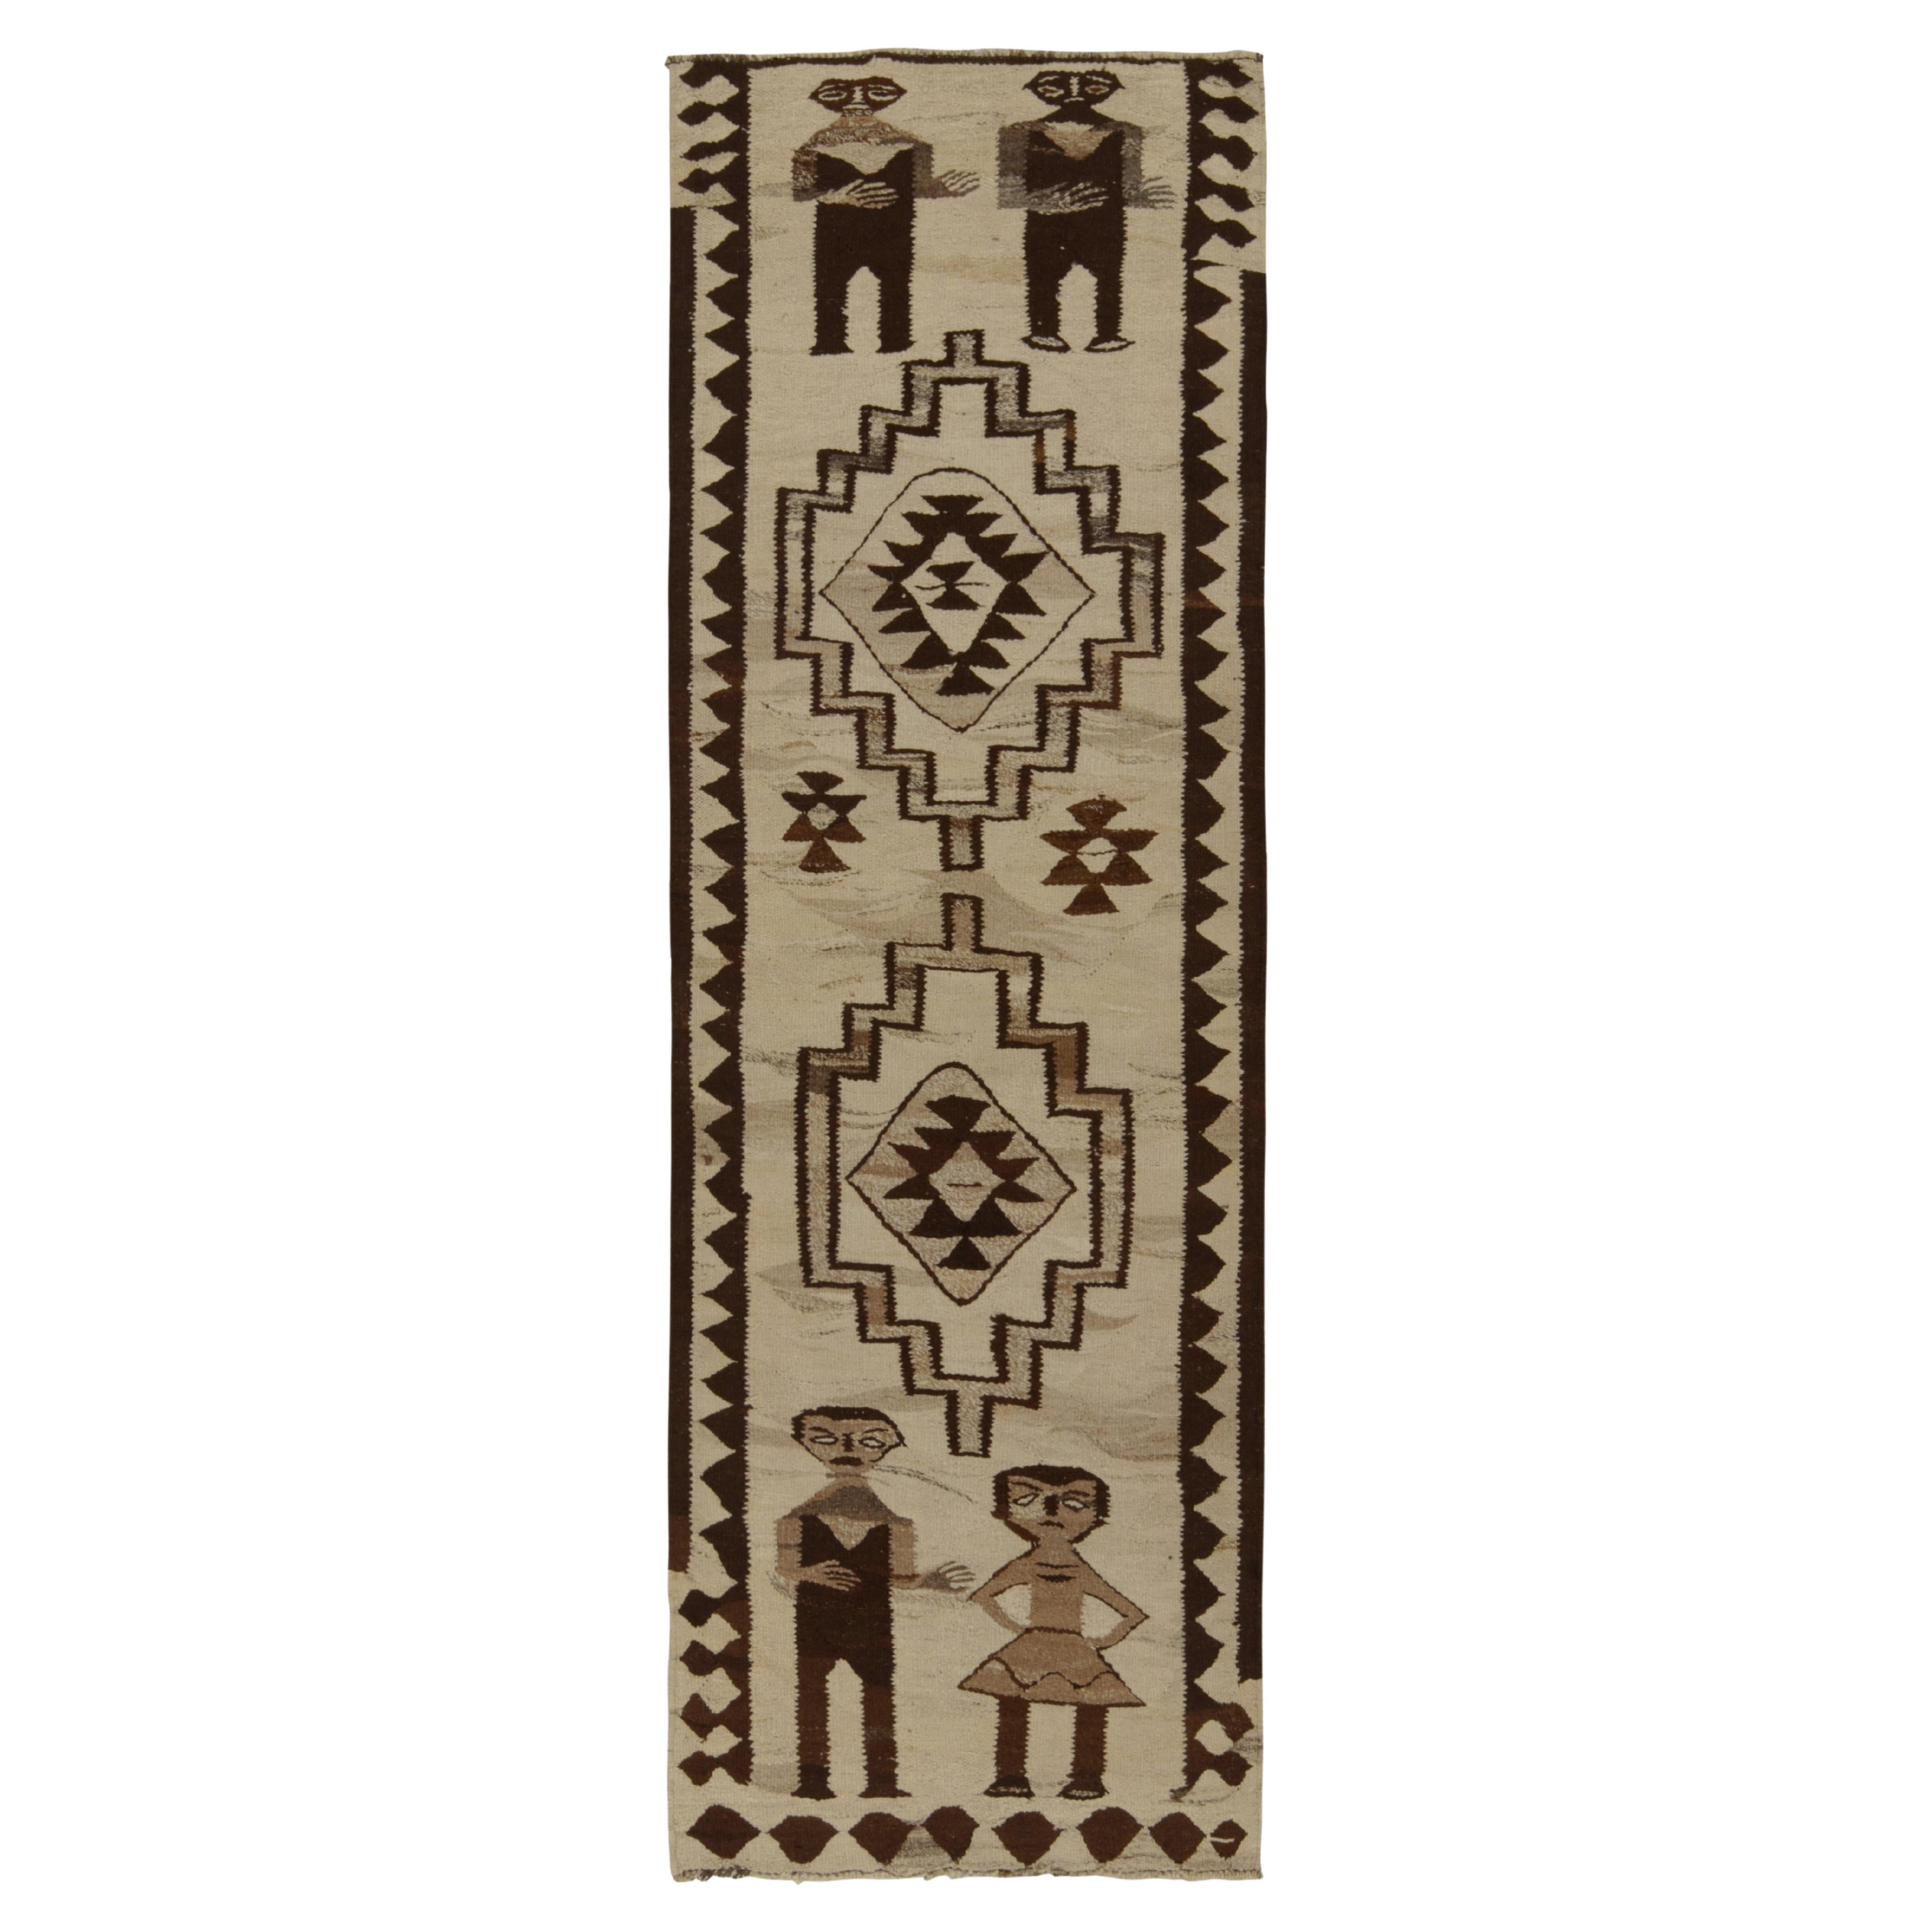 Vintage Kilim Runner in Beige-Brown Tribal PictorialsPattern by Rug & Kilim